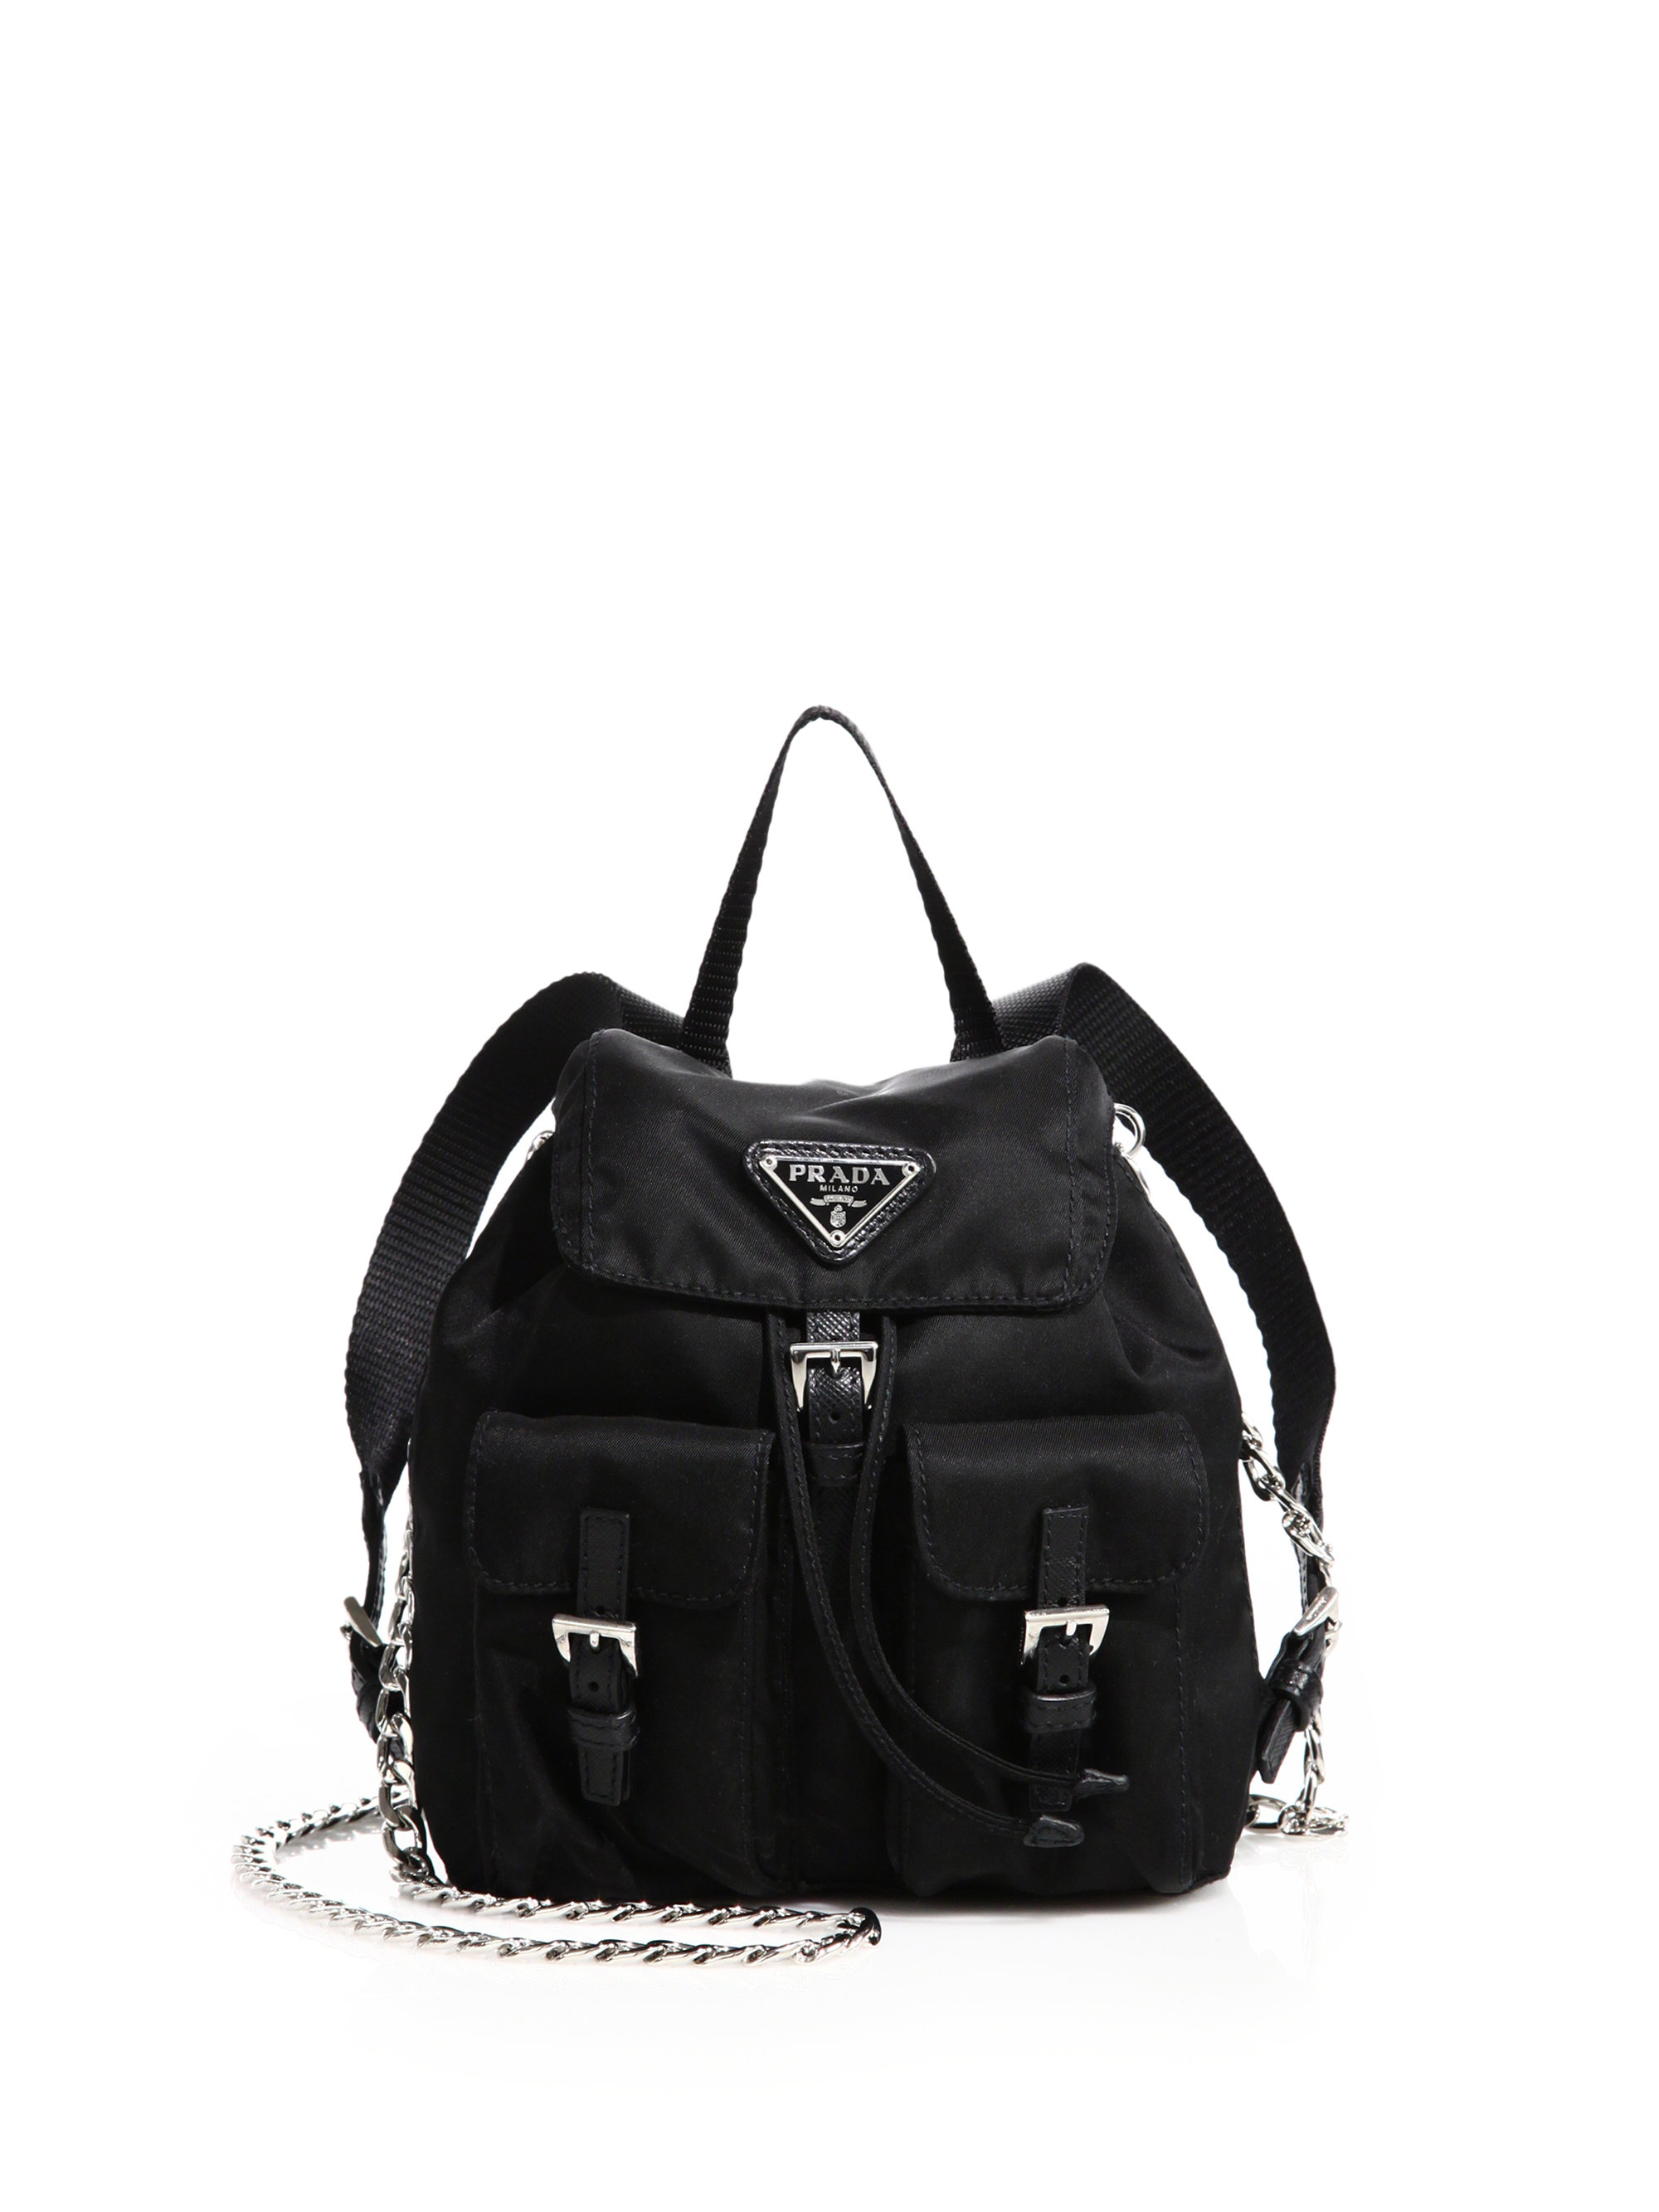 prada tote bag - Prada Vela Mini Crossbody Backpack in Black (nero) | Lyst